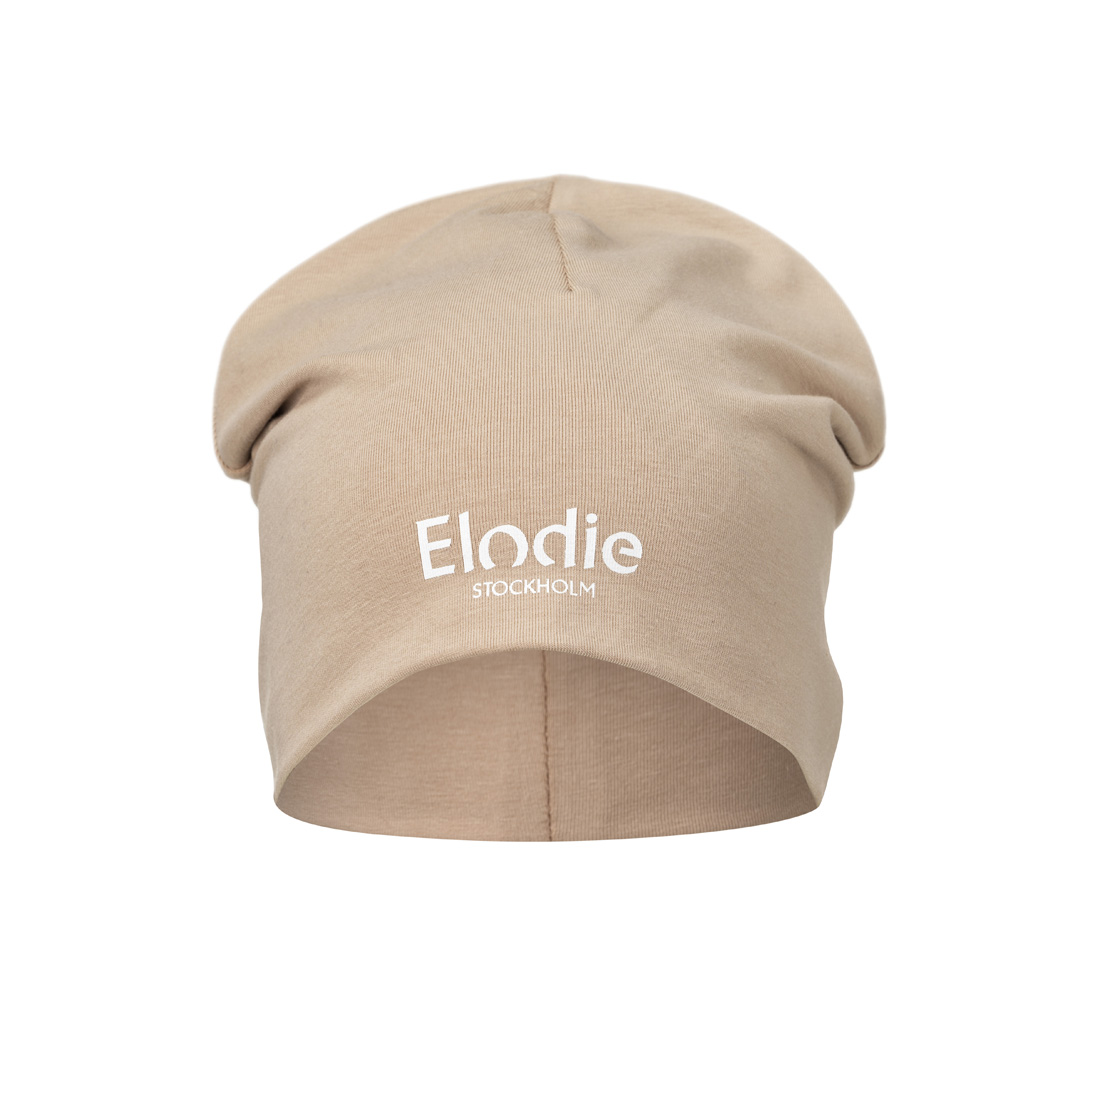 Čepice bavlněná Logo Blushing Pink Elodie Details čepice: 2-3 roky